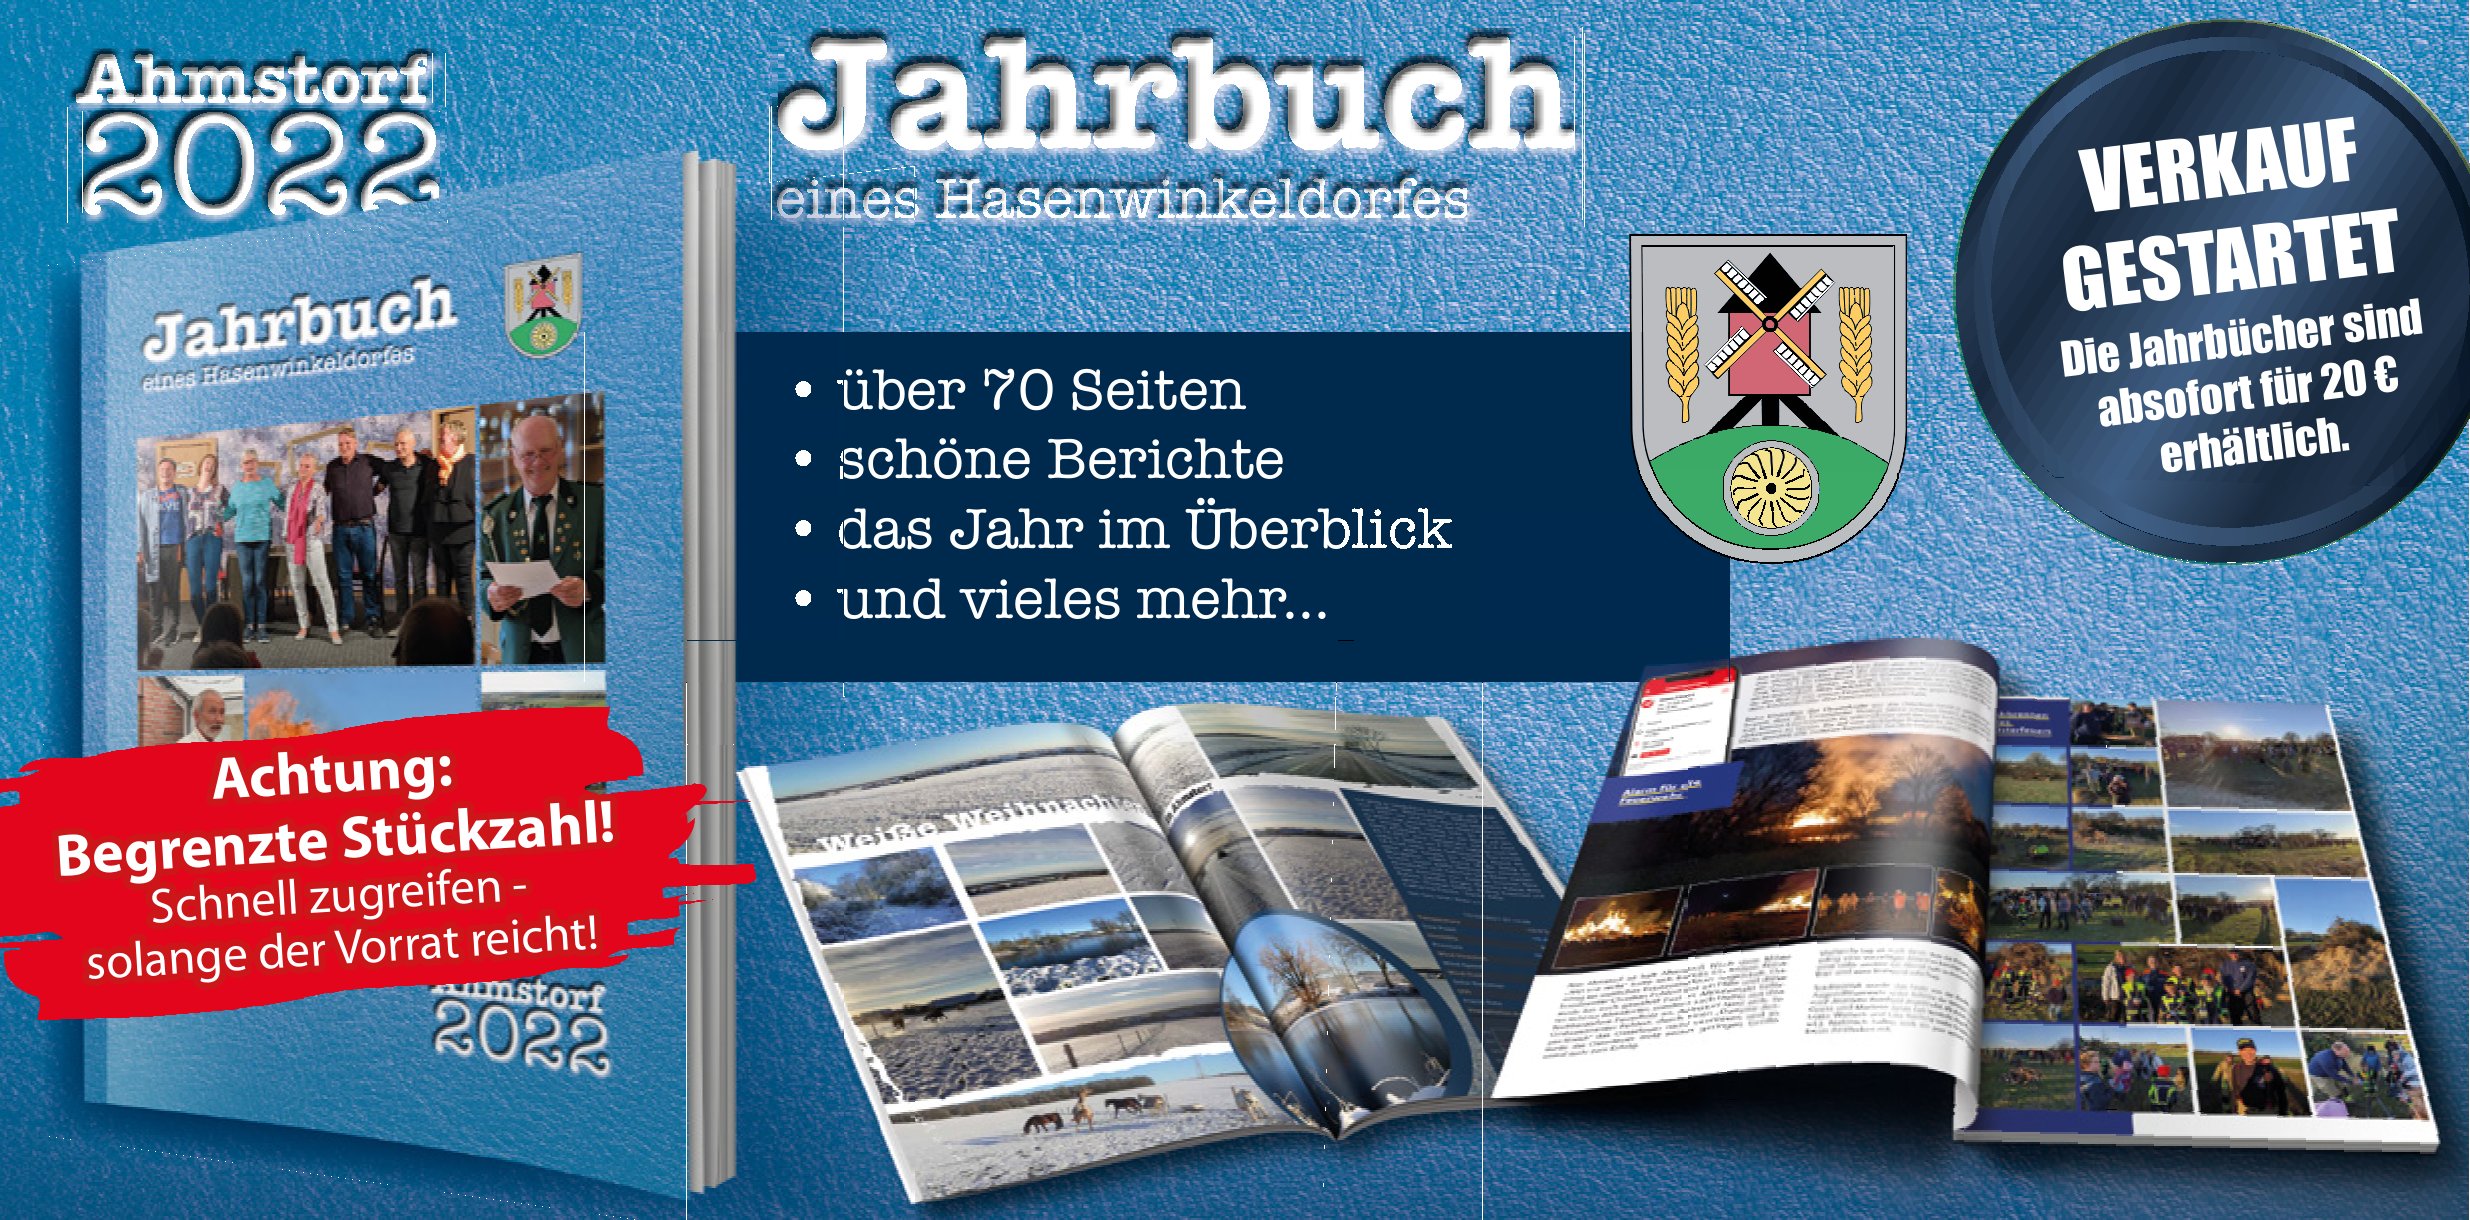 Flyer_Jahrbuch2022_Ahmstorf_01-01